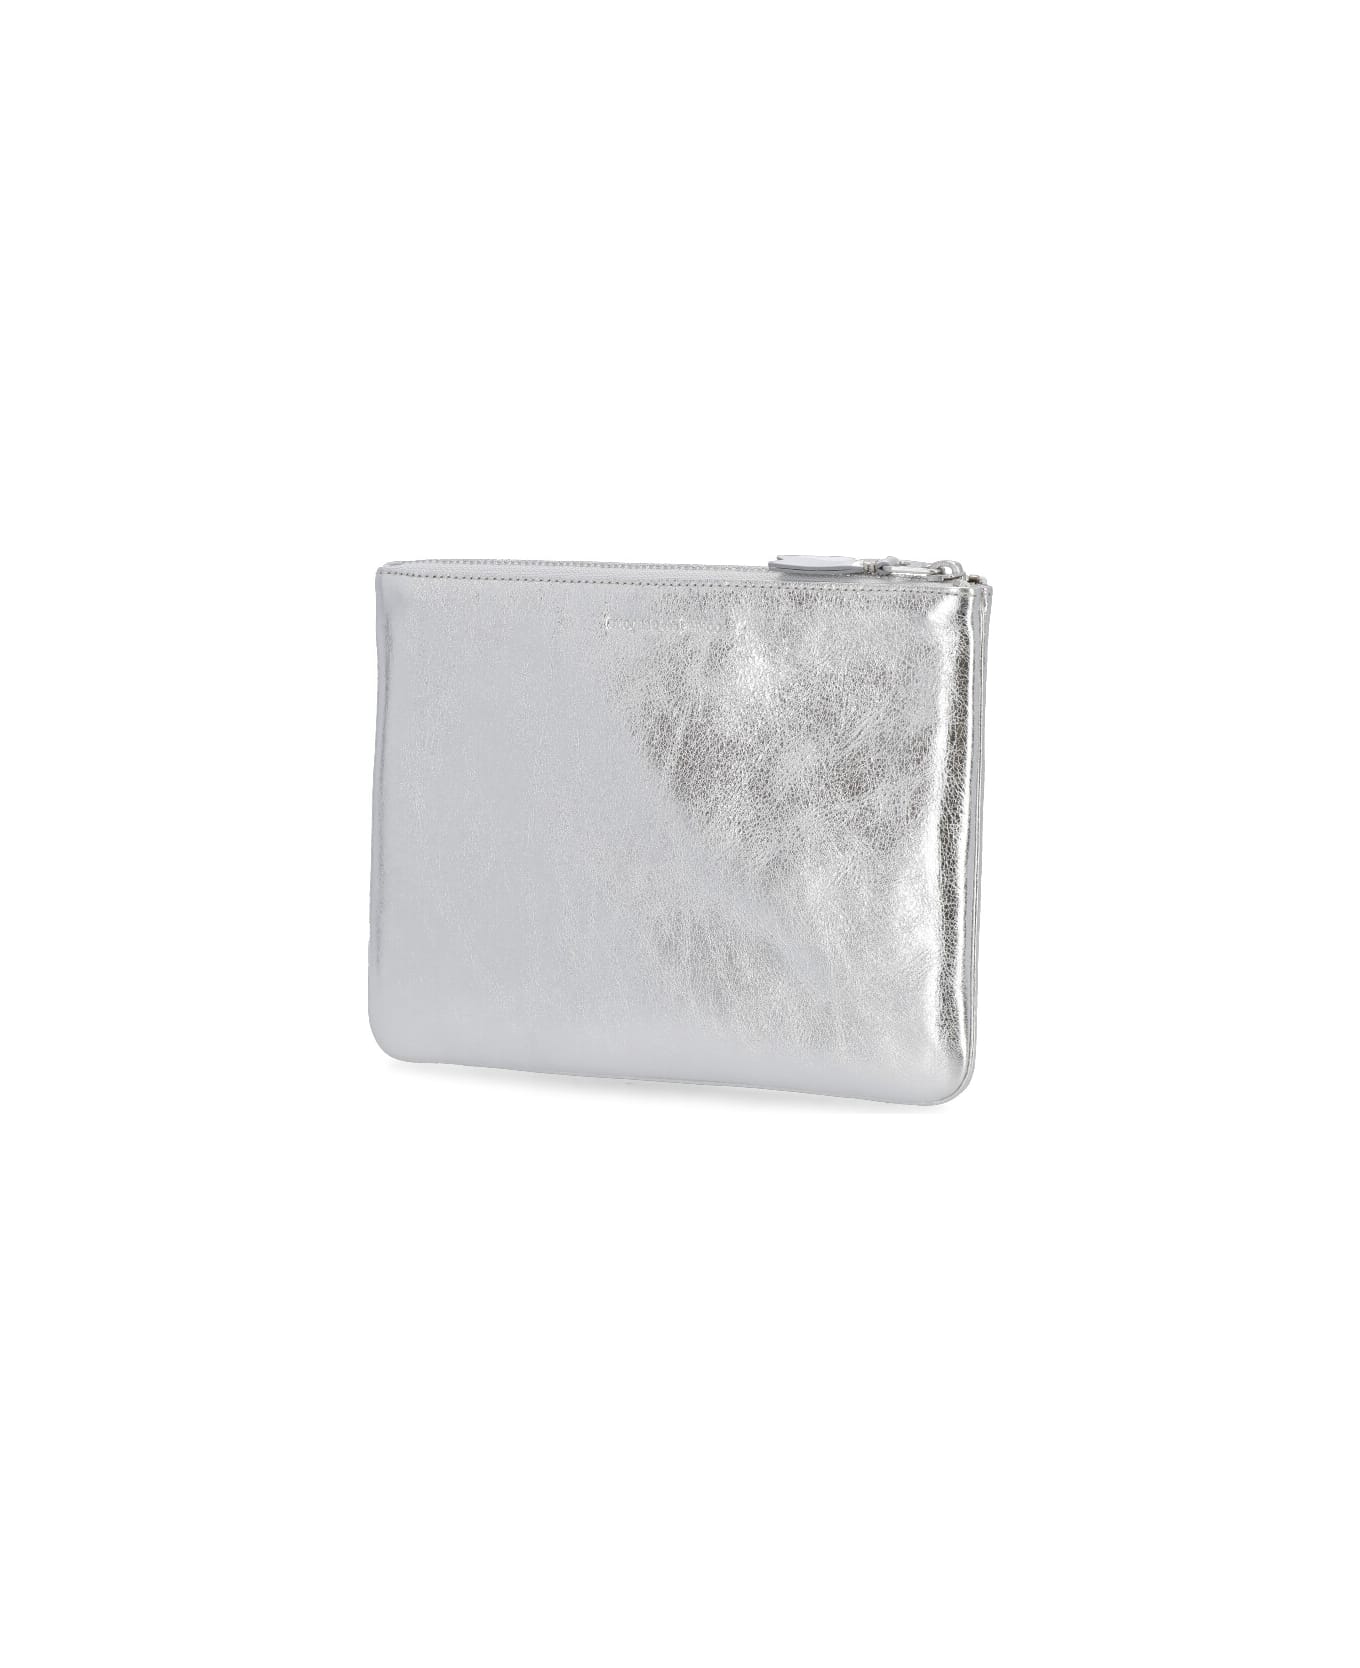 Comme des Garçons Wallet Leather Pochette - Silver 財布